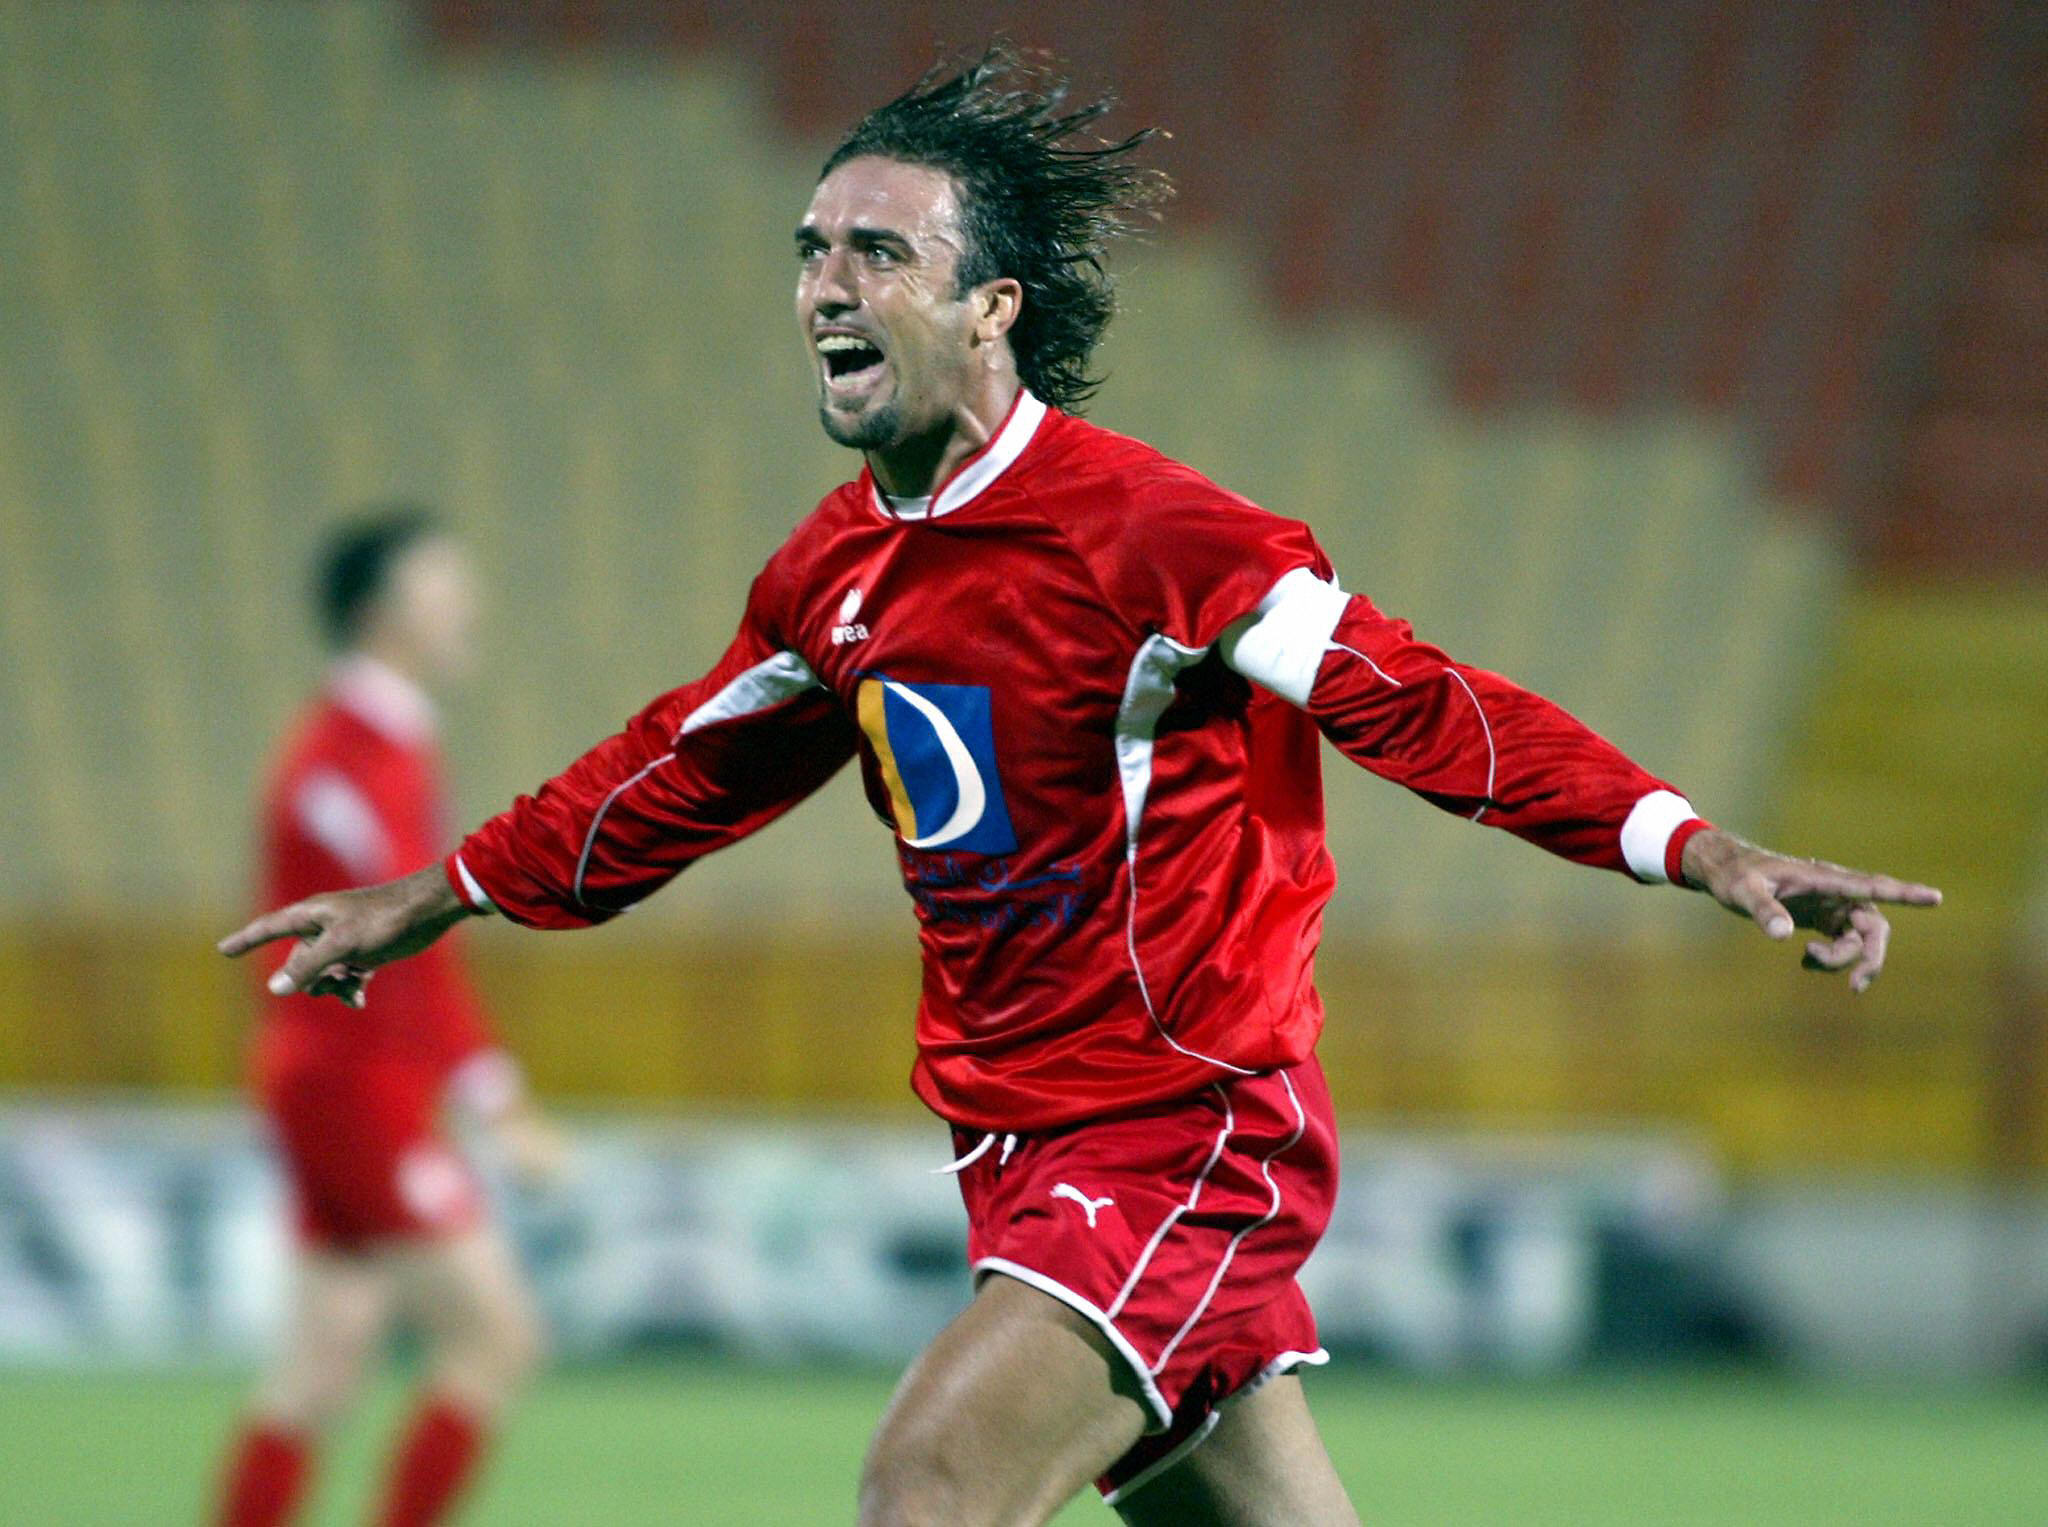 Road to 2022 Español on X: "GABRIEL BATISTUTA 🇦🇷 Se sumó al Al-Arabi SC  en el año 2003 y terminó su carrera en Qatar con una impresionante marca de  27 goles en